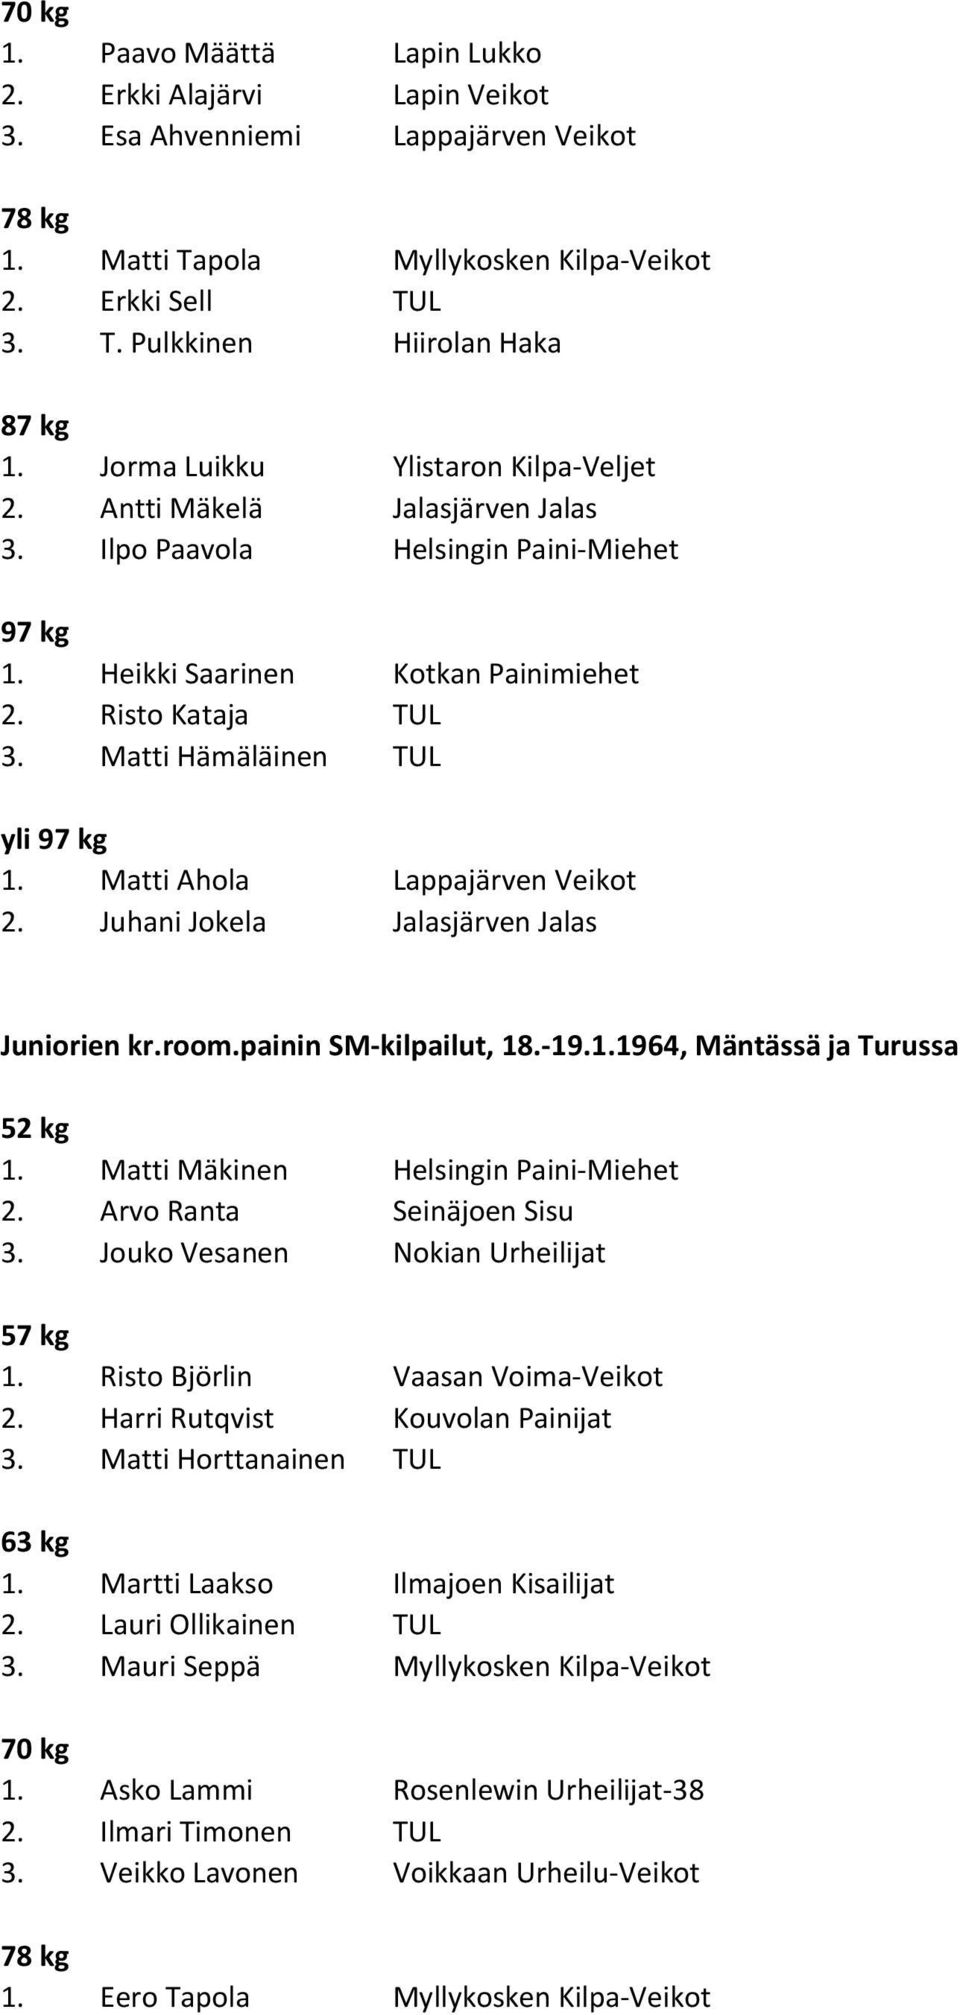 Juhani Jokela Jalasjärven Jalas Juniorien kr.room.painin SM-kilpailut, 18.-19.1.1964, Mäntässä ja Turussa 1. Matti Mäkinen Helsingin Paini-Miehet 2. Arvo Ranta Seinäjoen Sisu 3.